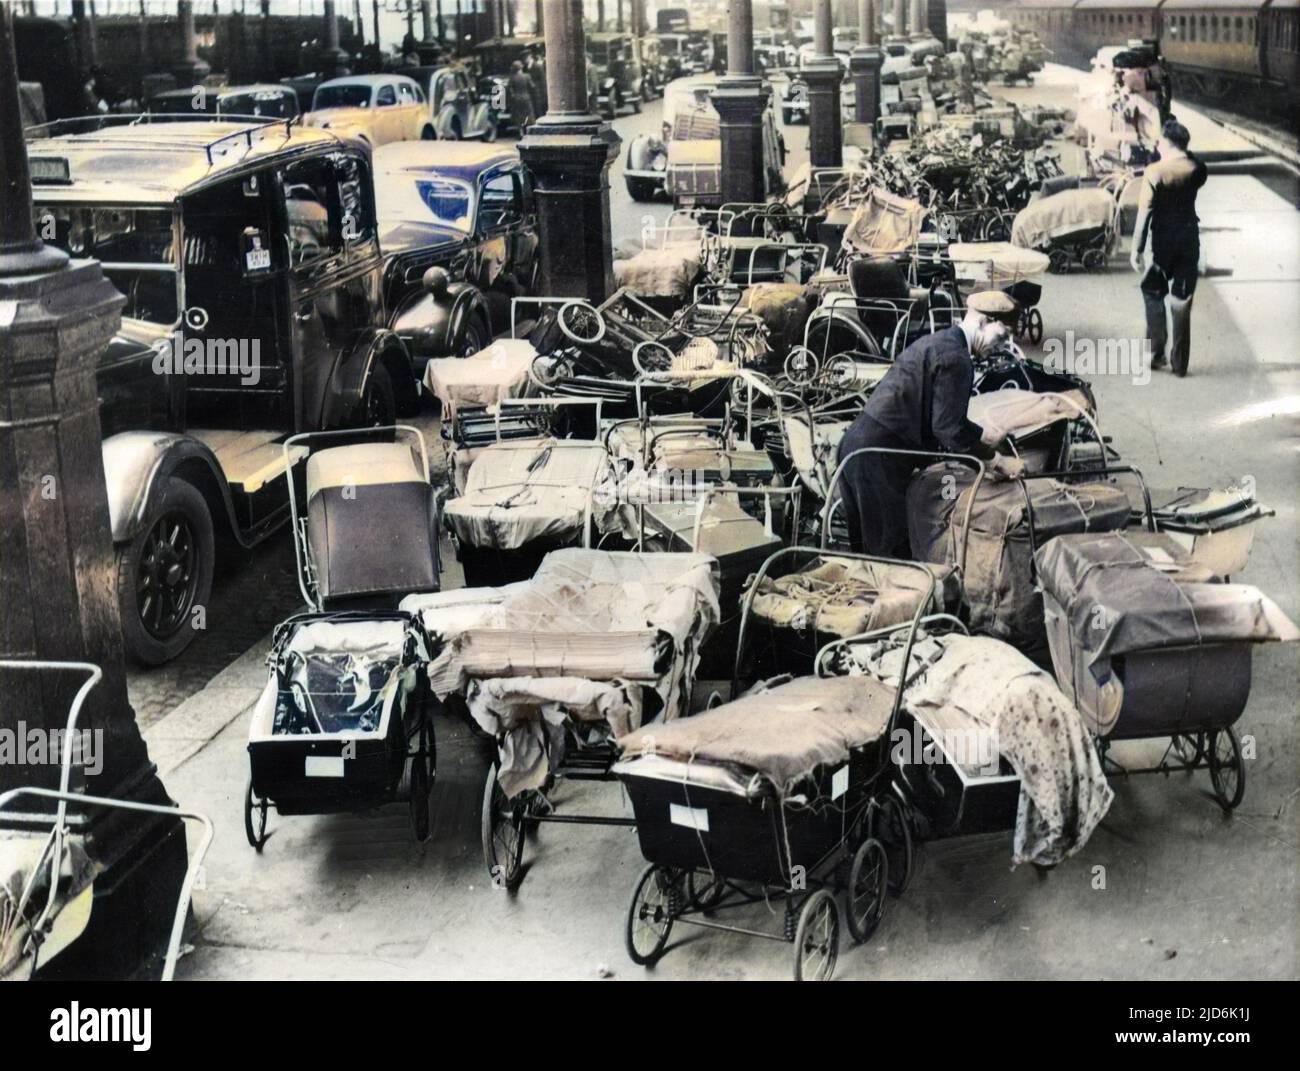 WW2 - Kinderwagen mit Besitztümern kehren nach Euston, London, zurück, nachdem Evakuierte nach dem Passieren der Raketenangriffsabstinke vom V1. Und V2. September nach Hause zurückgekehrt sind - 1944. September. Kolorierte Version von: 11007657 Datum: 1944 Stockfoto